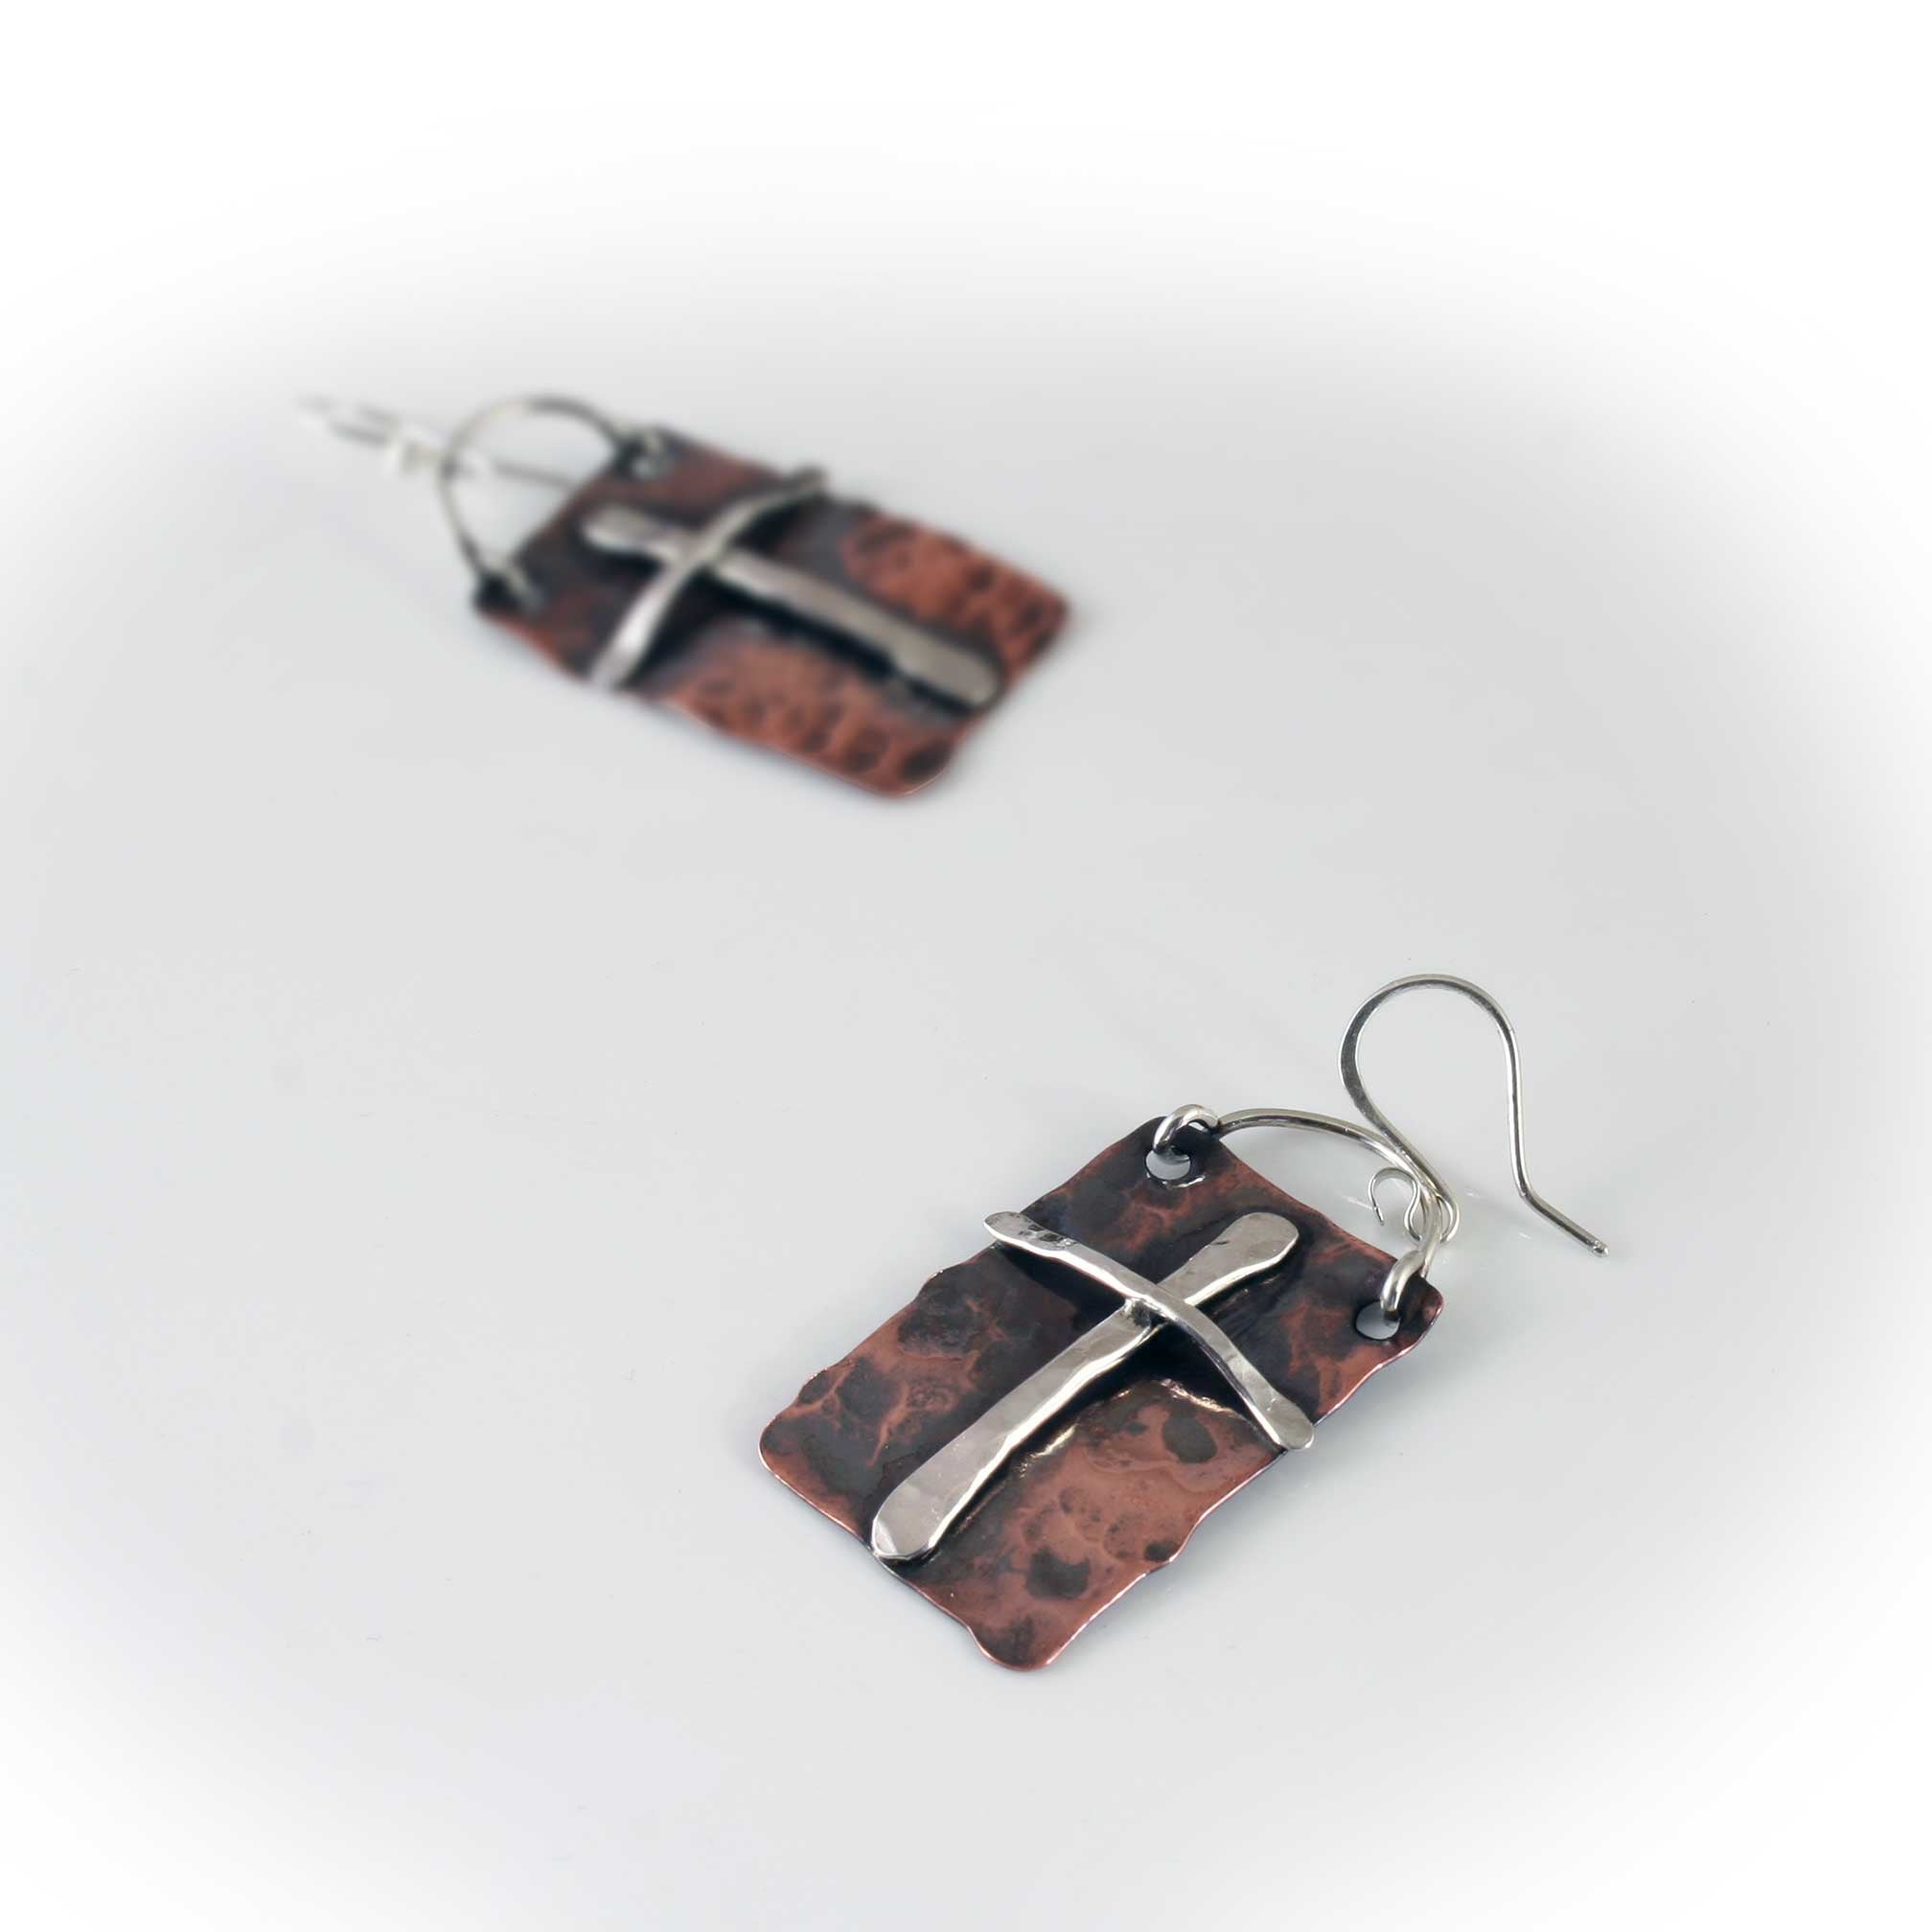 Southwestern Cross Earrings in Sterling Silver and Copper